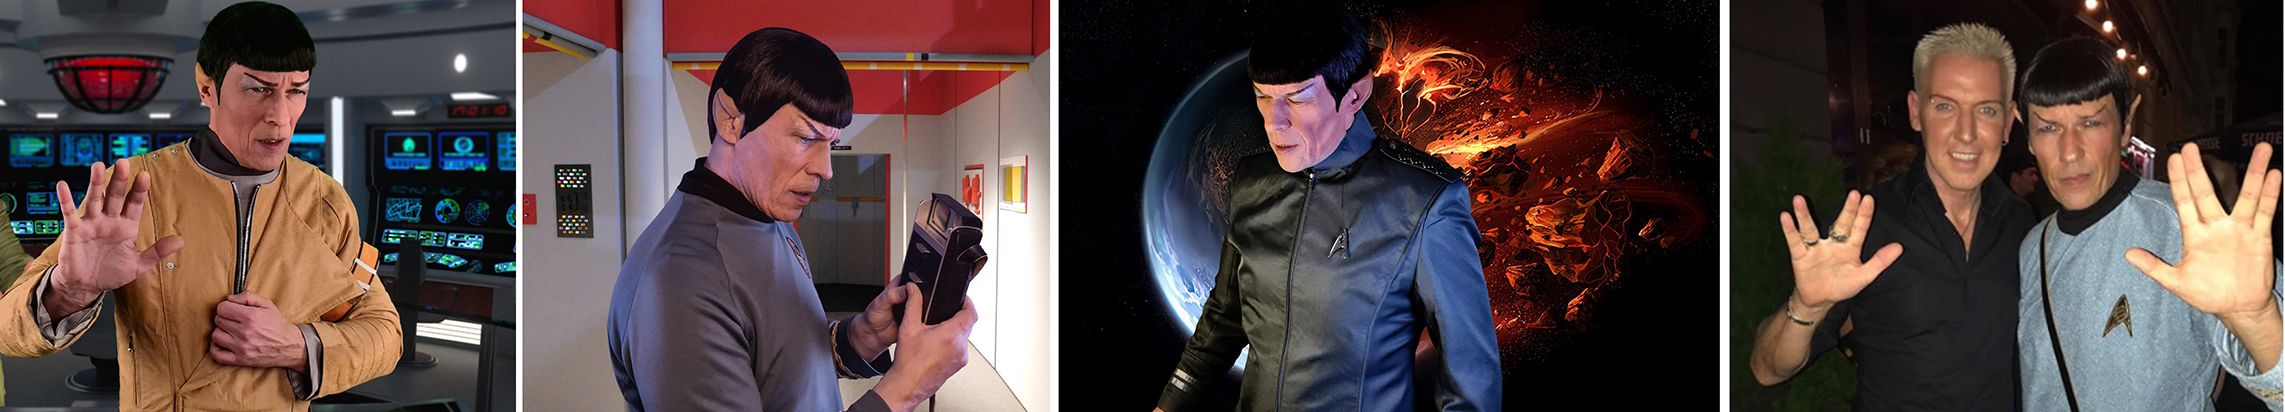 Mr. Spock Doppelgänger Collage